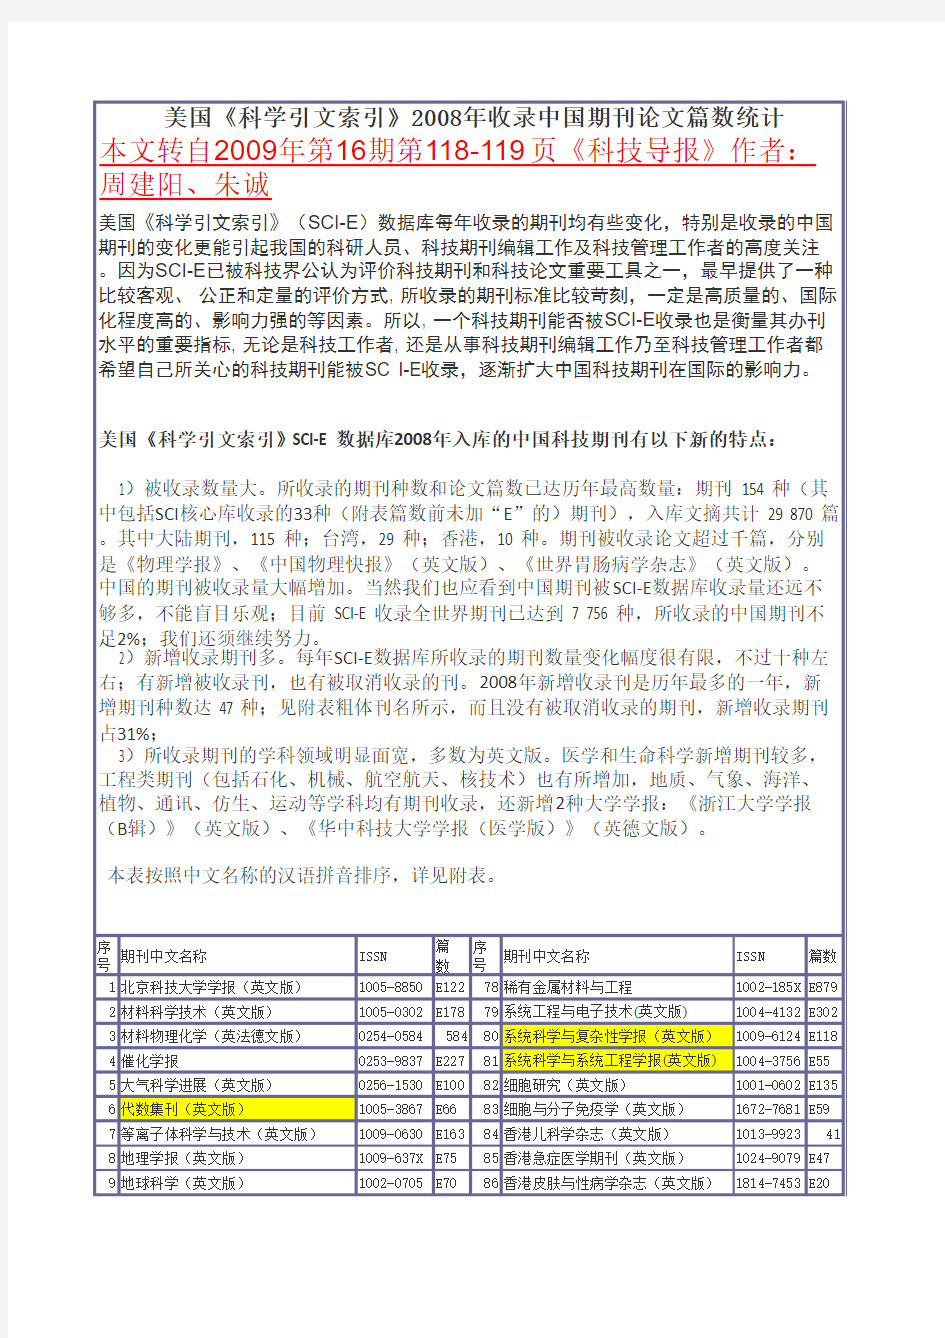 美国《科学引文索引》2008年收录中国期刊论文篇数统计